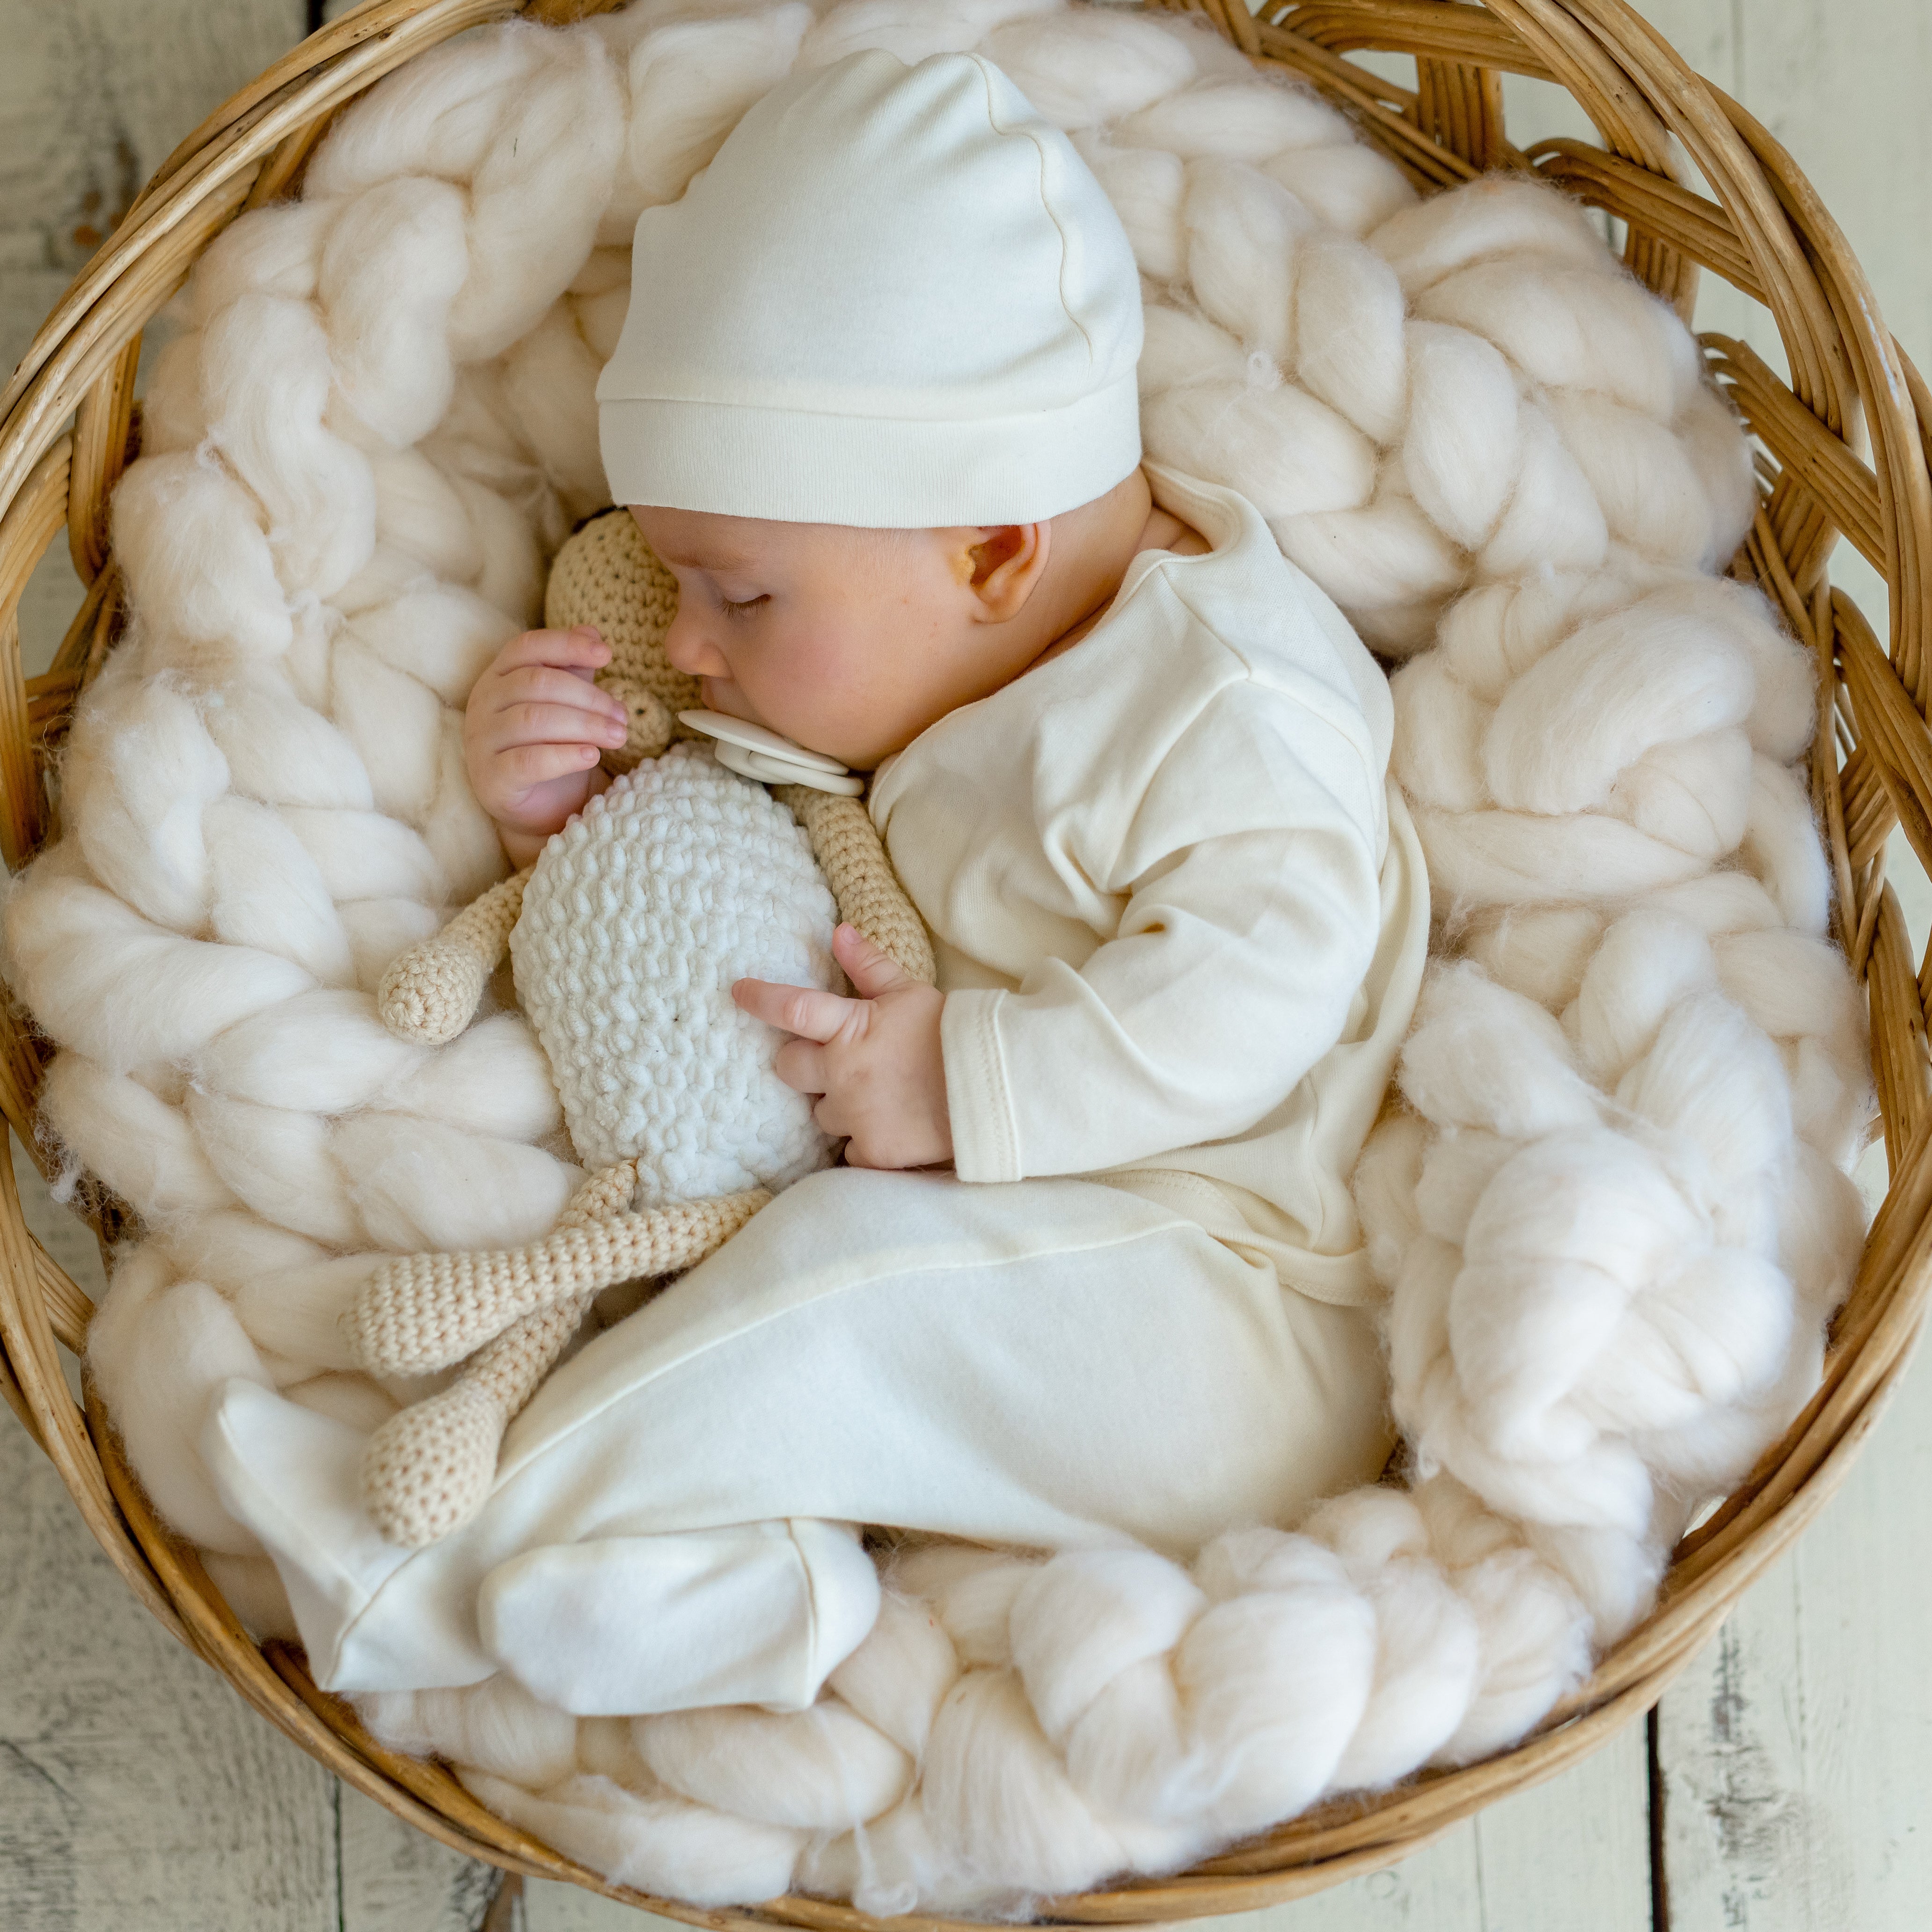 Kocho Neugeborenen Erstausstattung Set – Elsara 100% Bio-Baumwolle